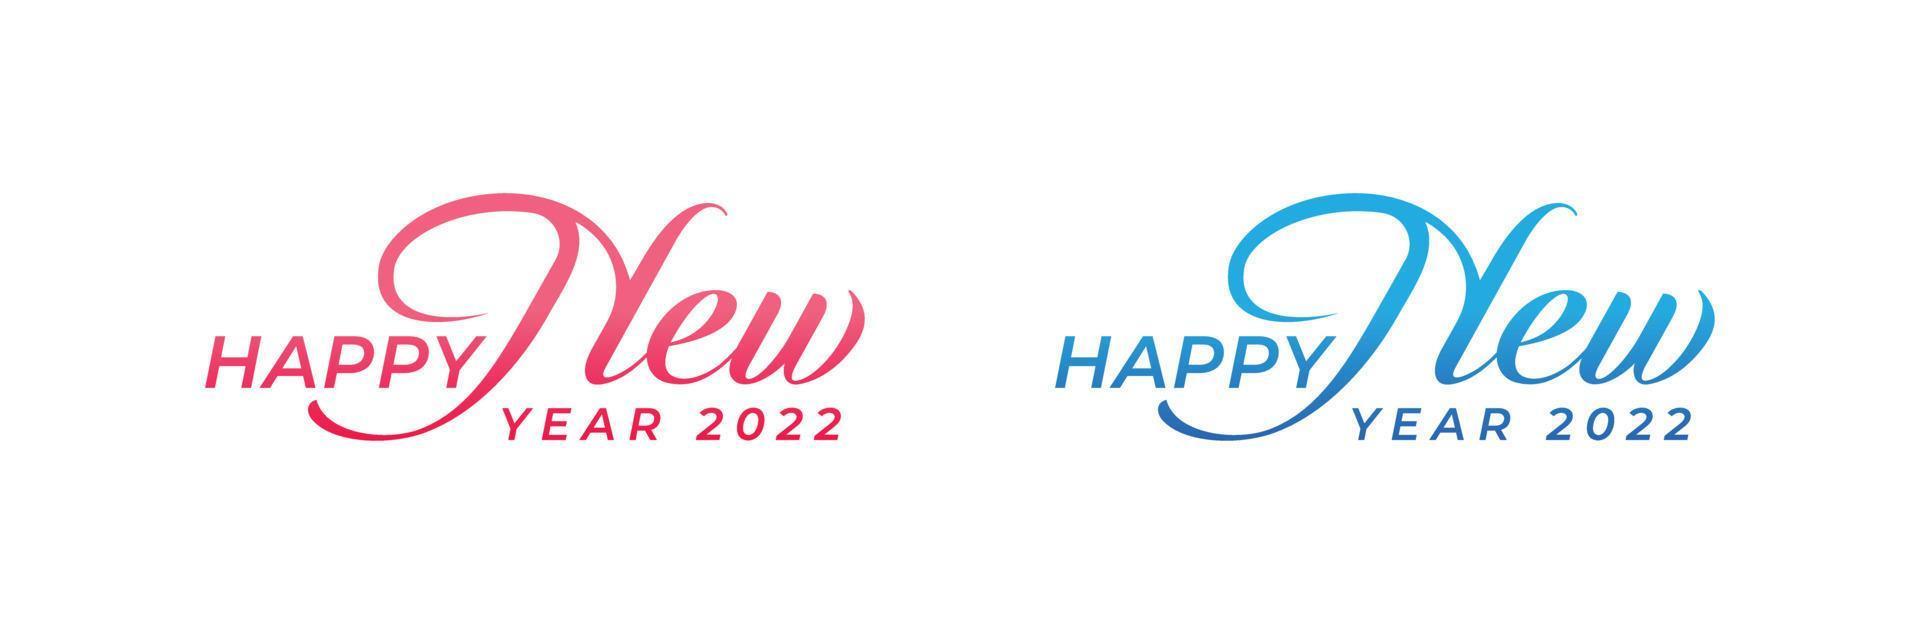 abstrakt handritad kreativ kalligrafi vektor logotypdesign. 2022 nyårslogotypdesign